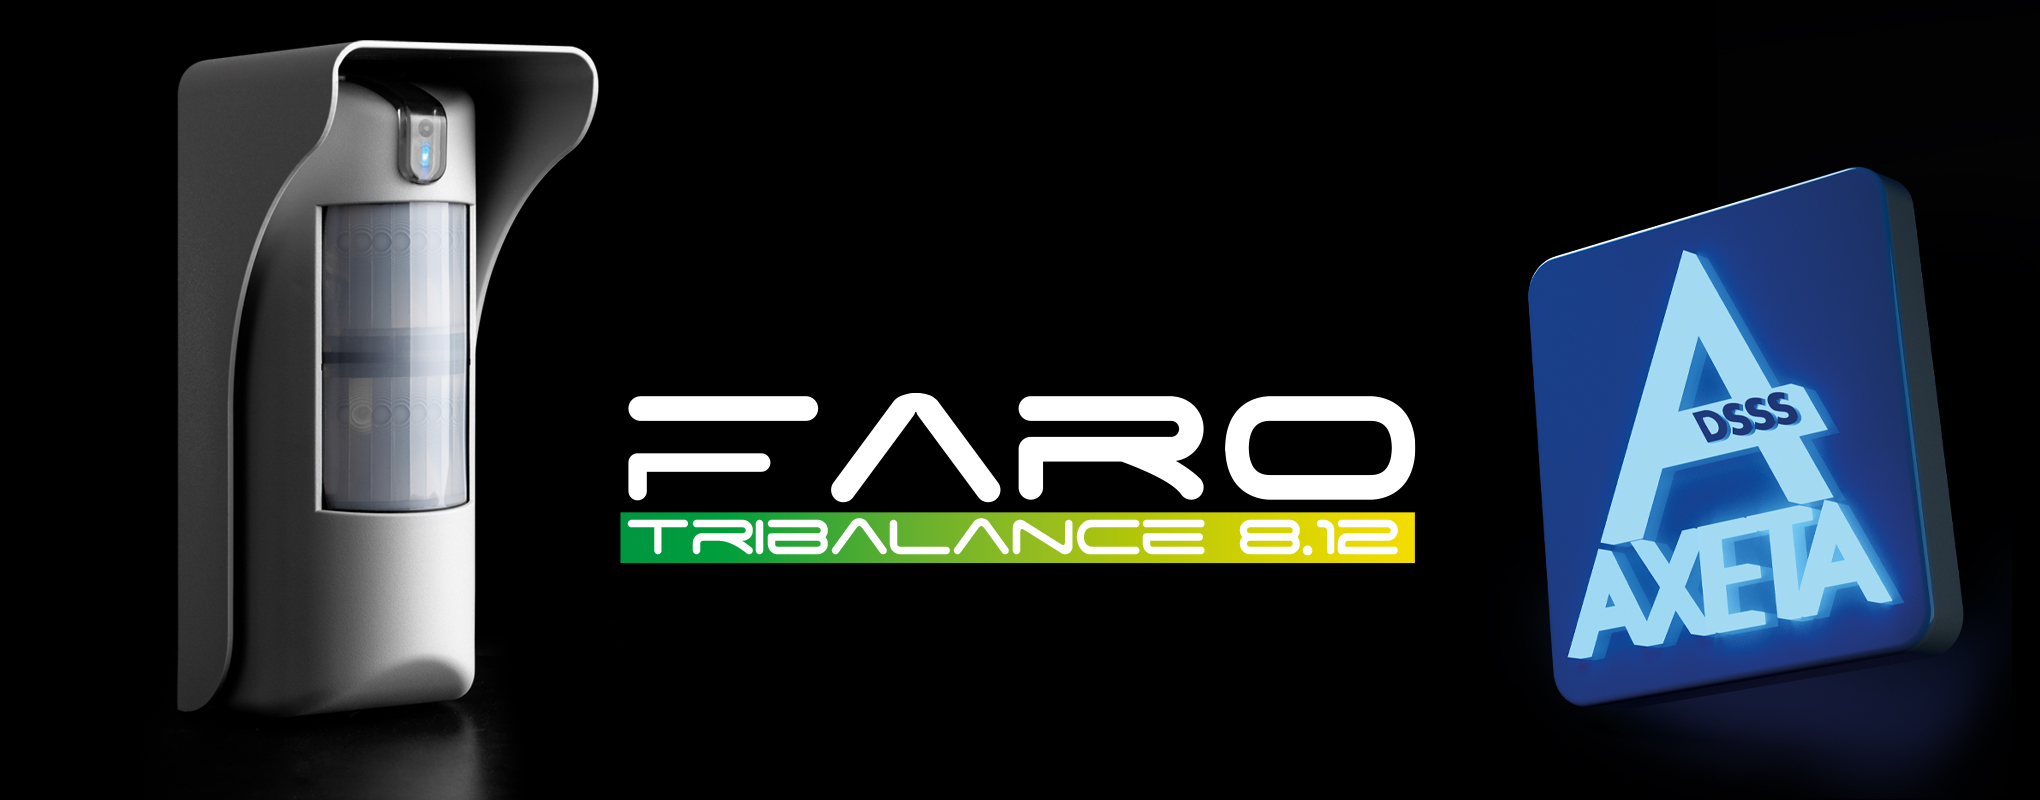 Faro Tribalance AXETA | RILEVATORE WIRELESS A BATTERIA TRIPLA TECNOLOGIA DA ESTERNO